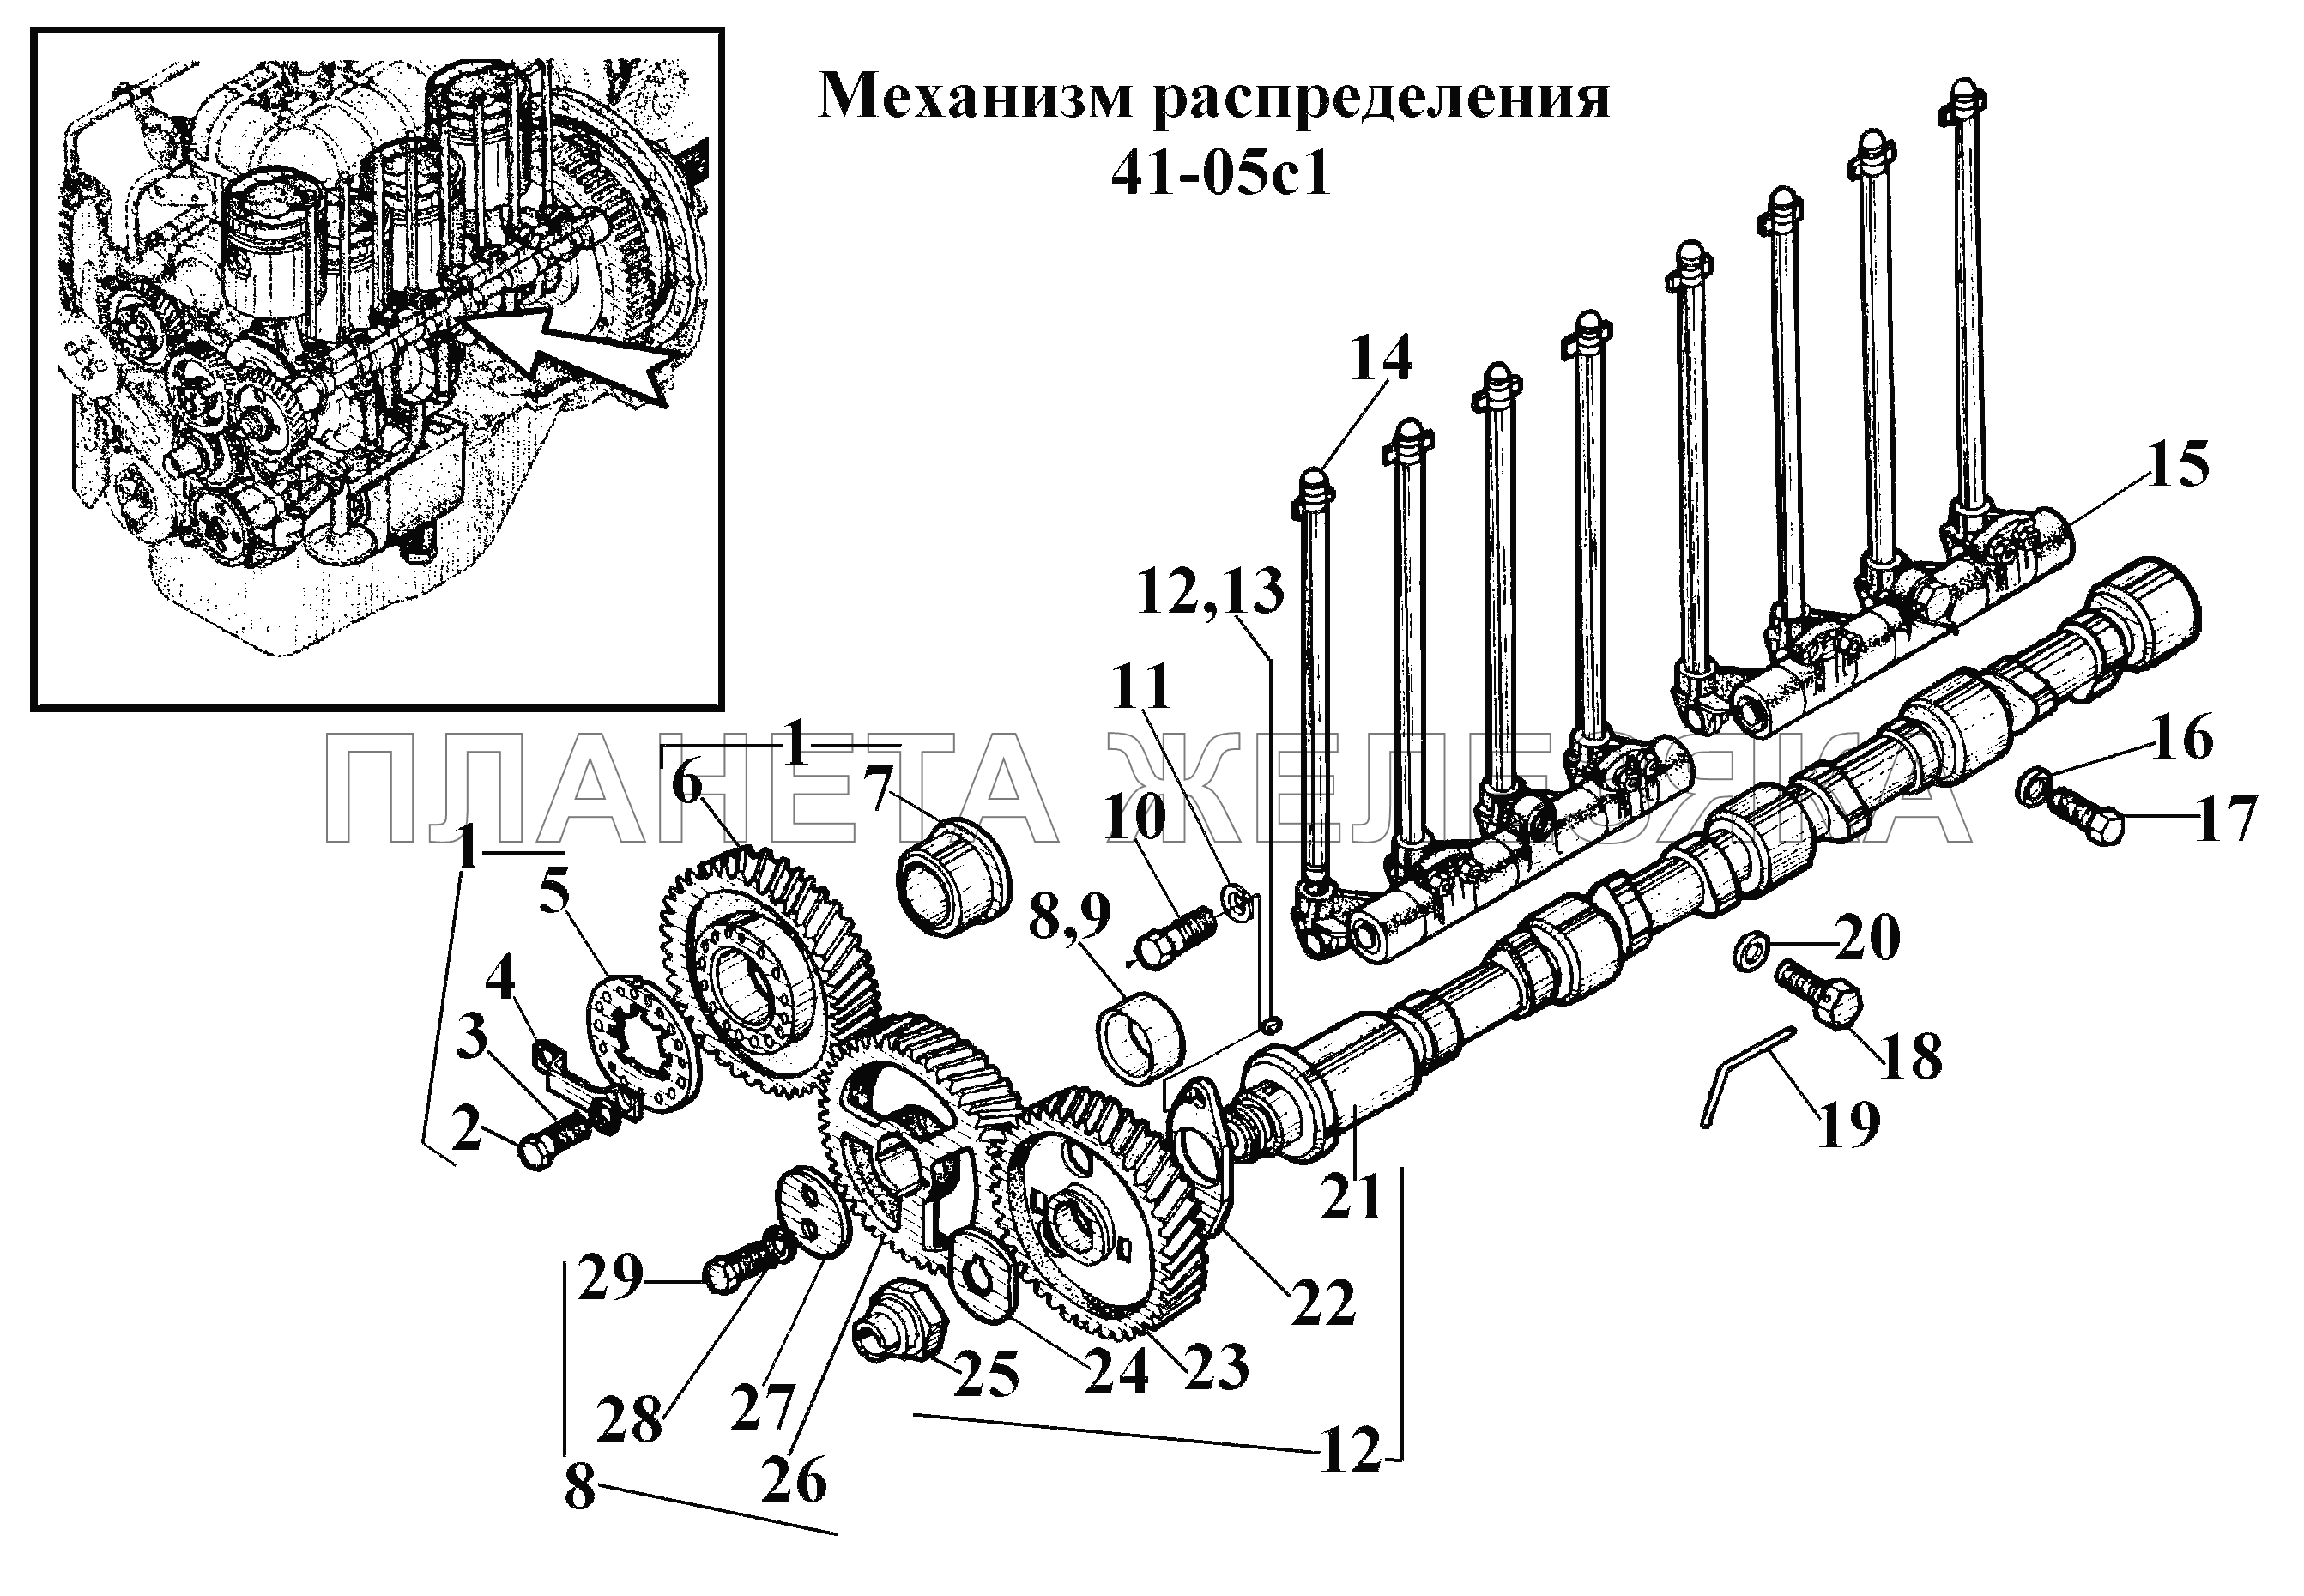 Механизм распределения 41-05с1 ВТ-100Д